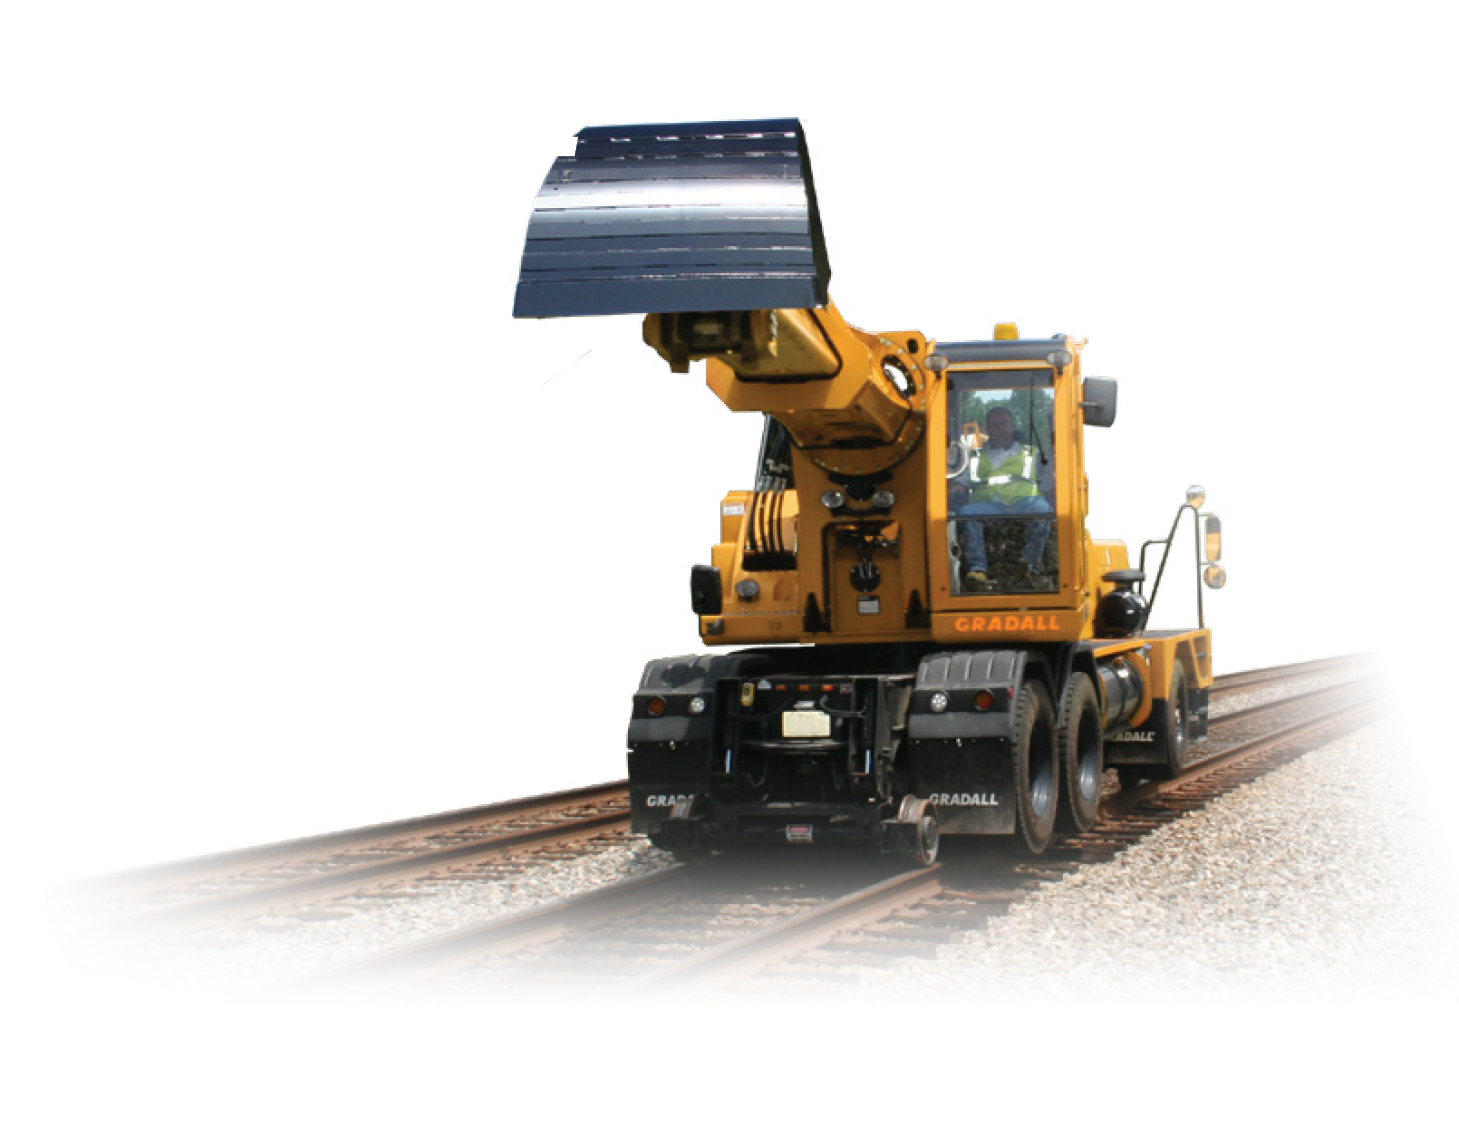 XL 5130 V - Gradall Railway Maintenance Machines - Amaco